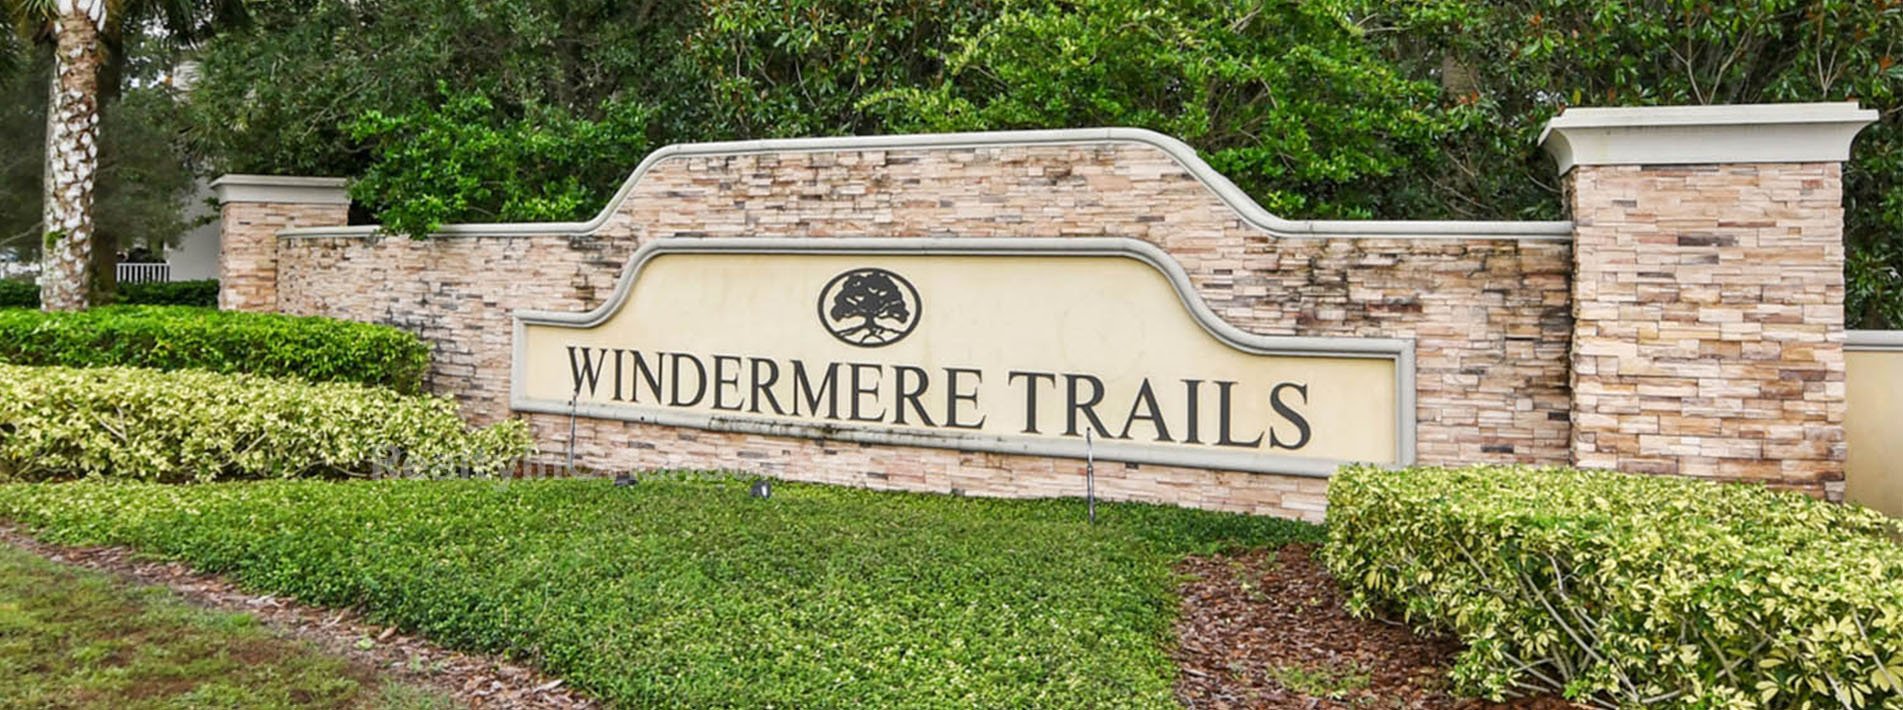 Windermere Trails Real Estate